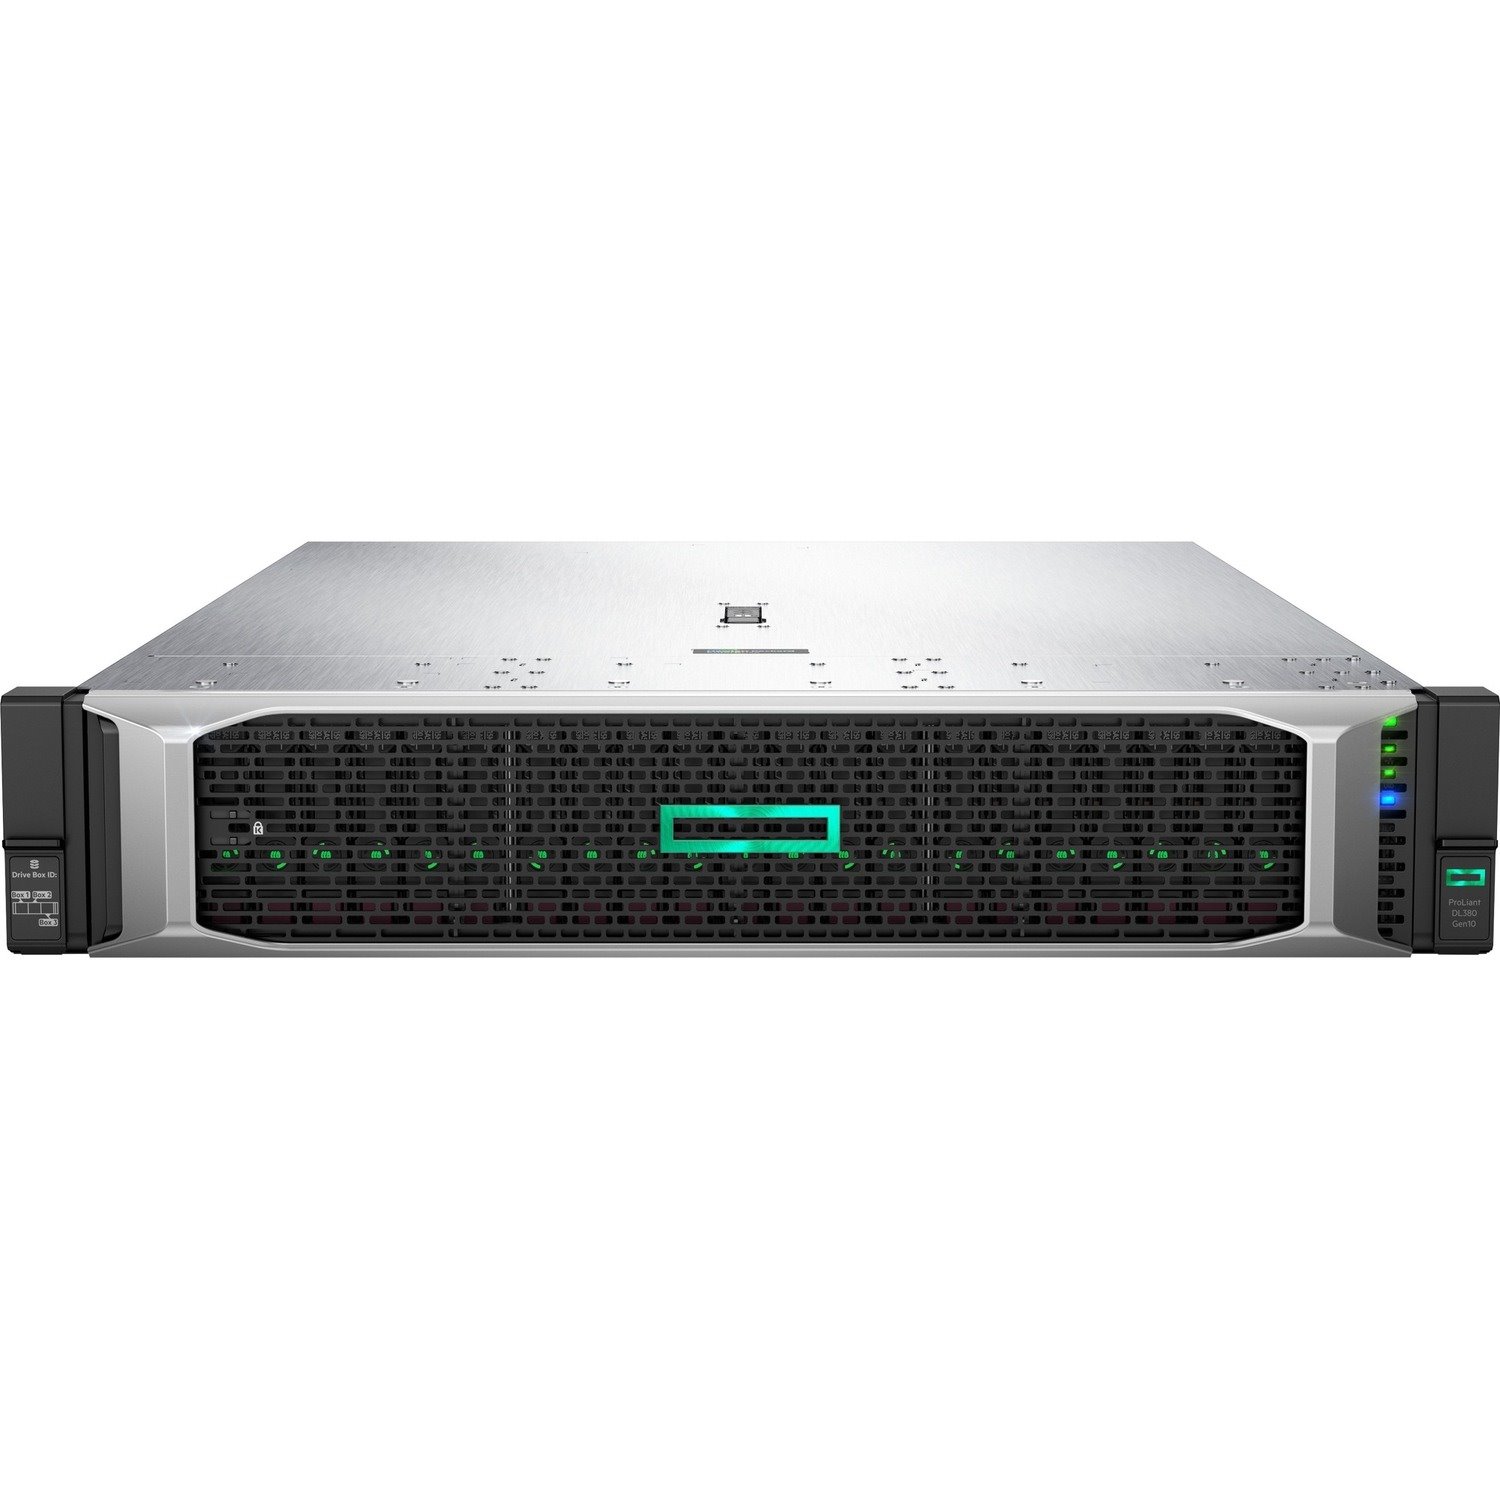 HPE ProLiant DL380 G10 2U Rack Server - 1 x Intel Xeon Silver 4215R 3.20 GHz - 32 GB RAM - Serial ATA/600 Controller